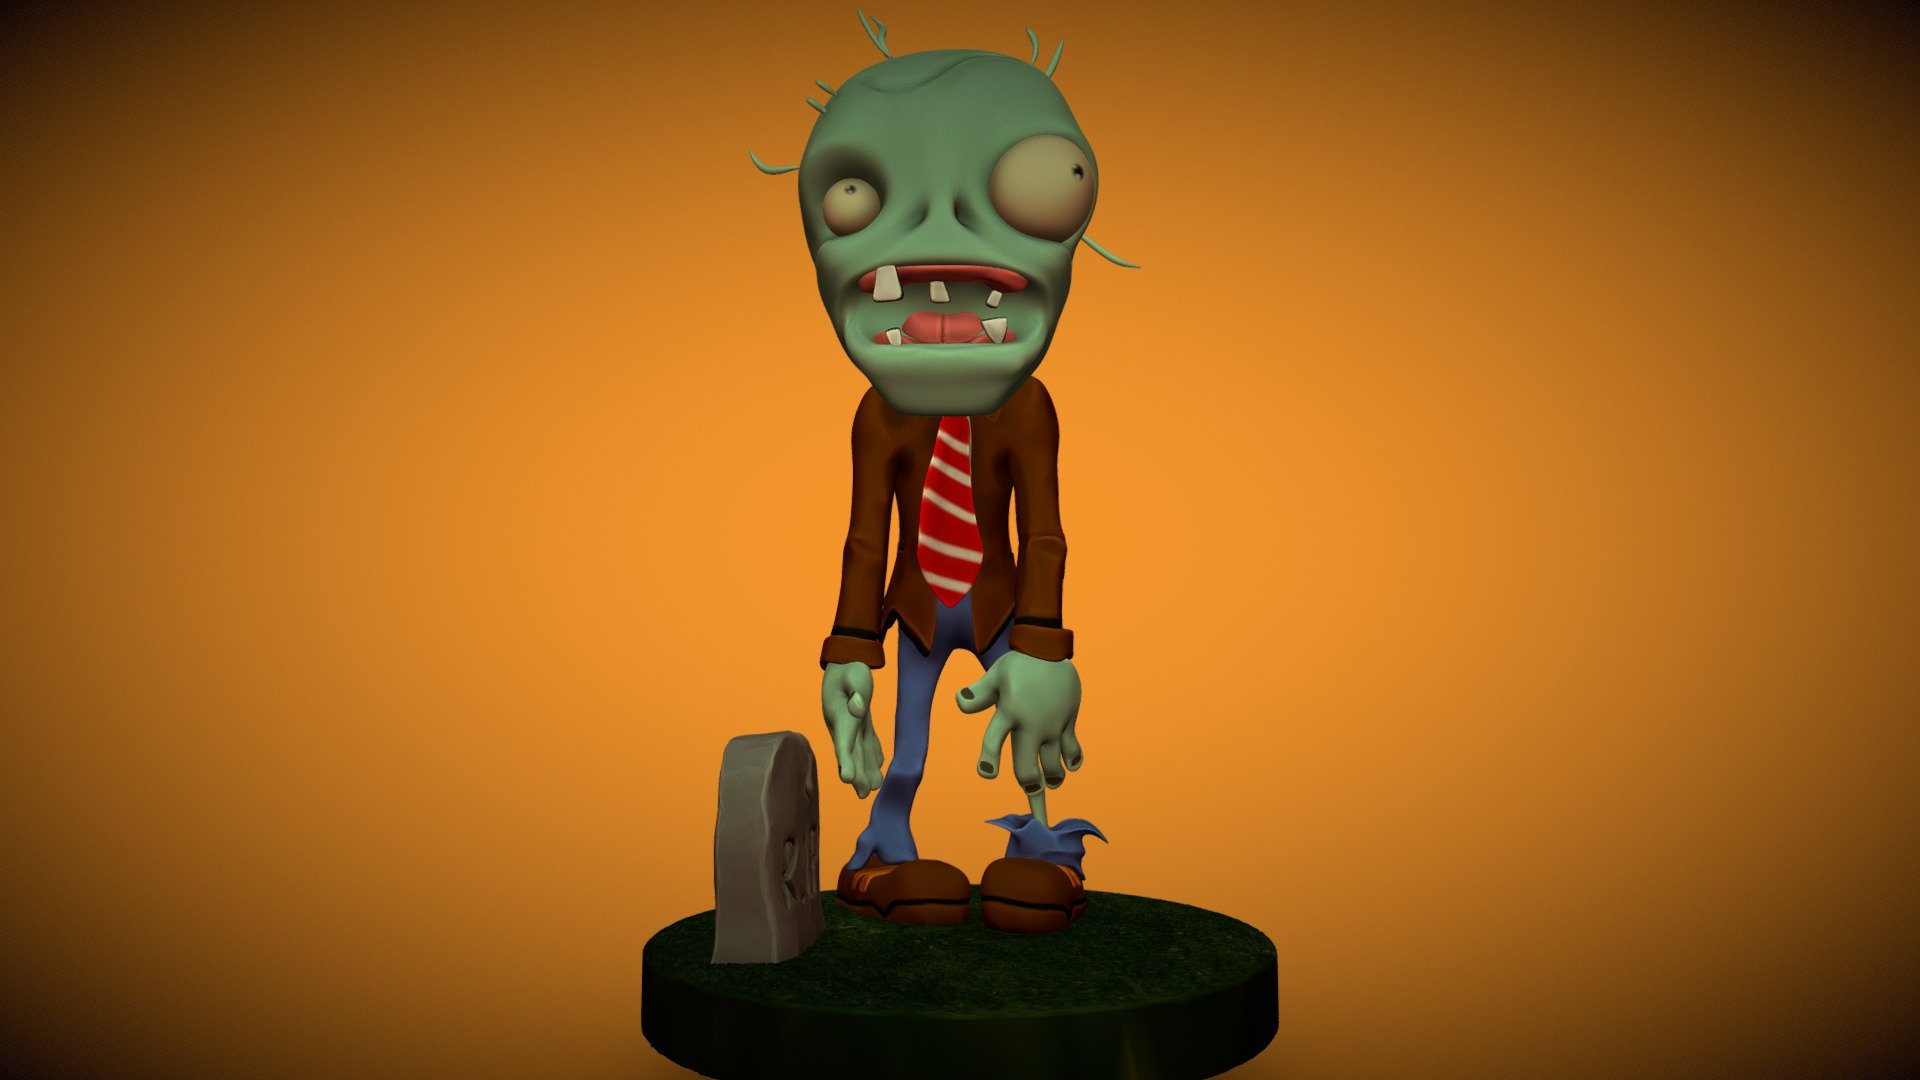 Zombie Plants vs Zombies 3D model 3D printable